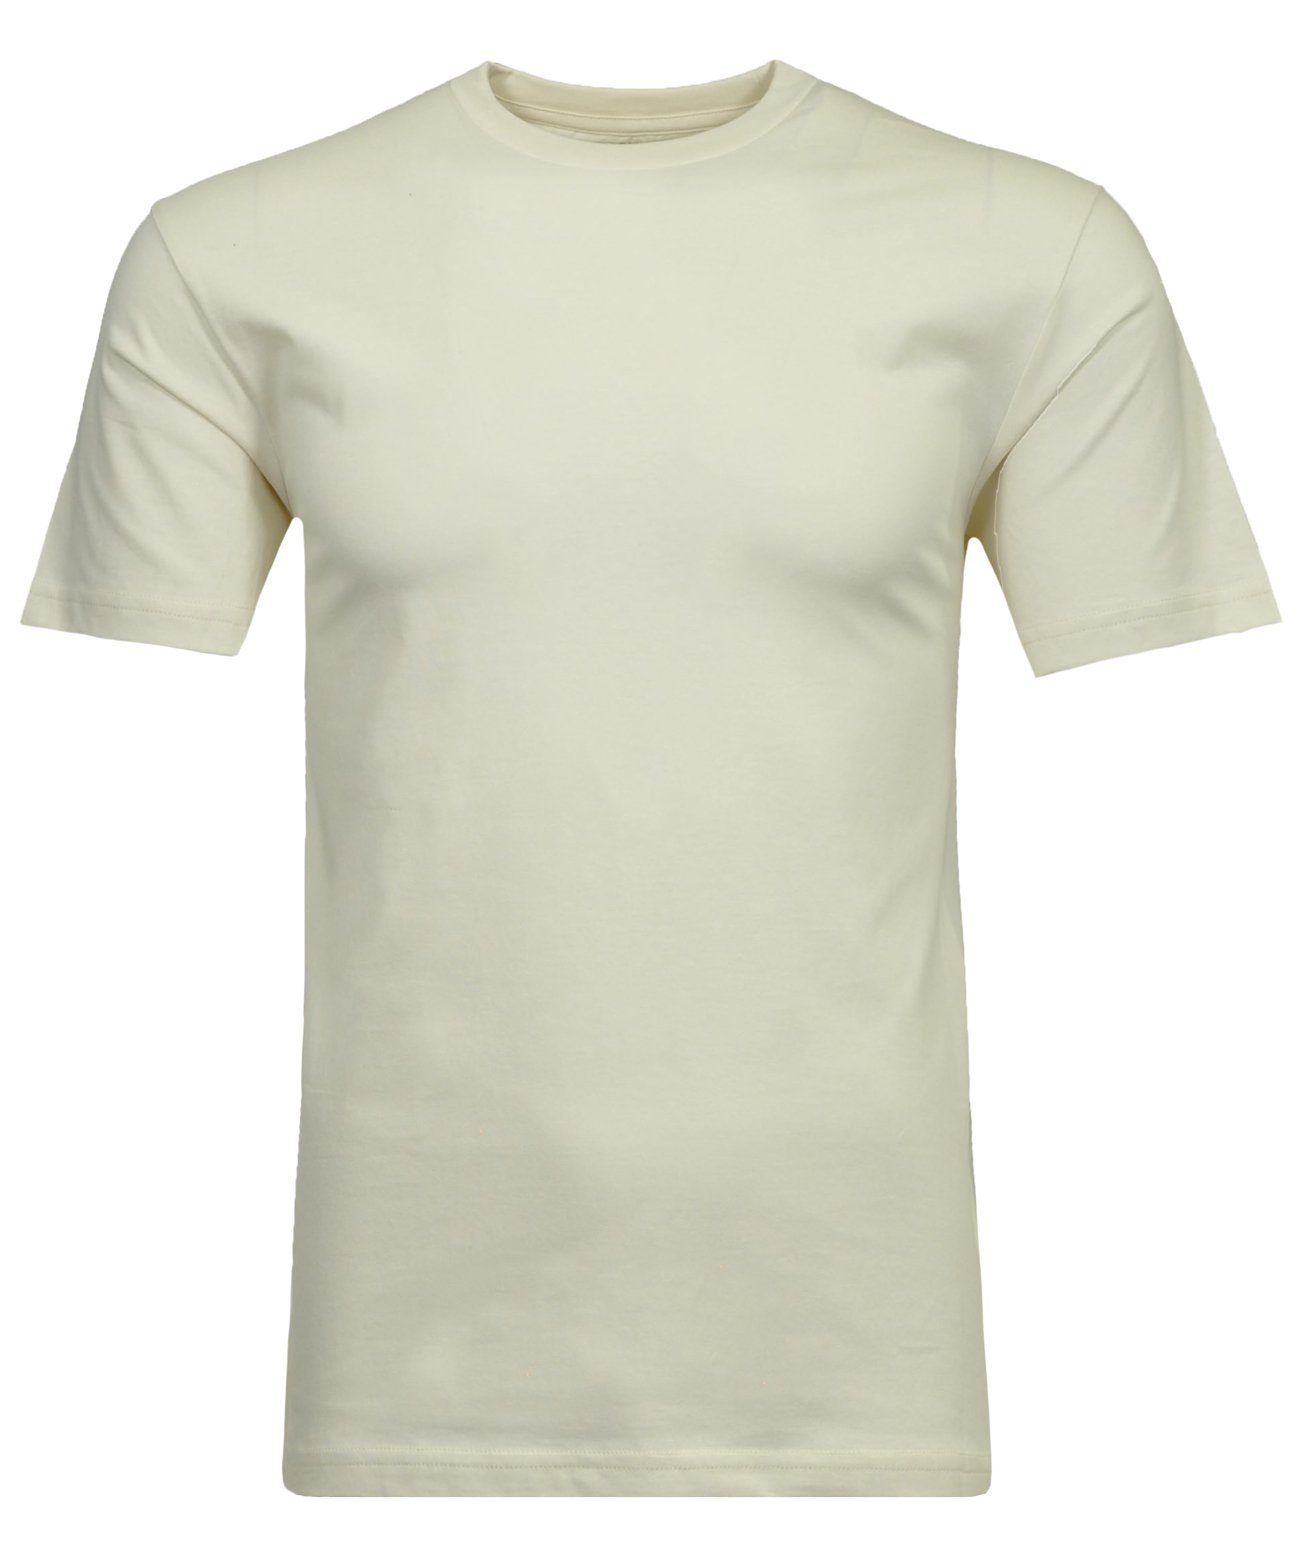 RAGMAN T-Shirt Ecru-004